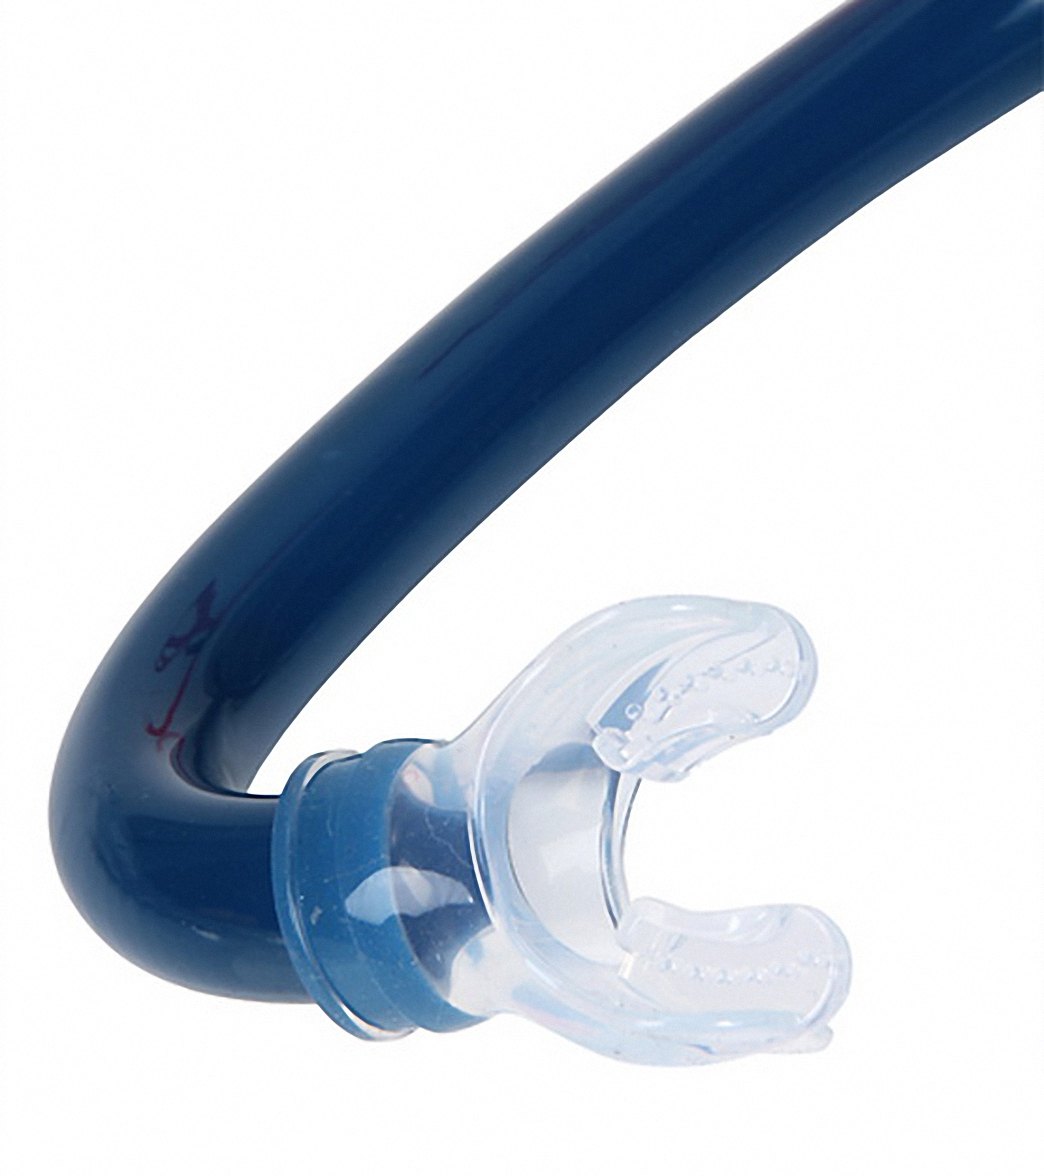 tubo frontal azul para la natación ylon-a ysti01